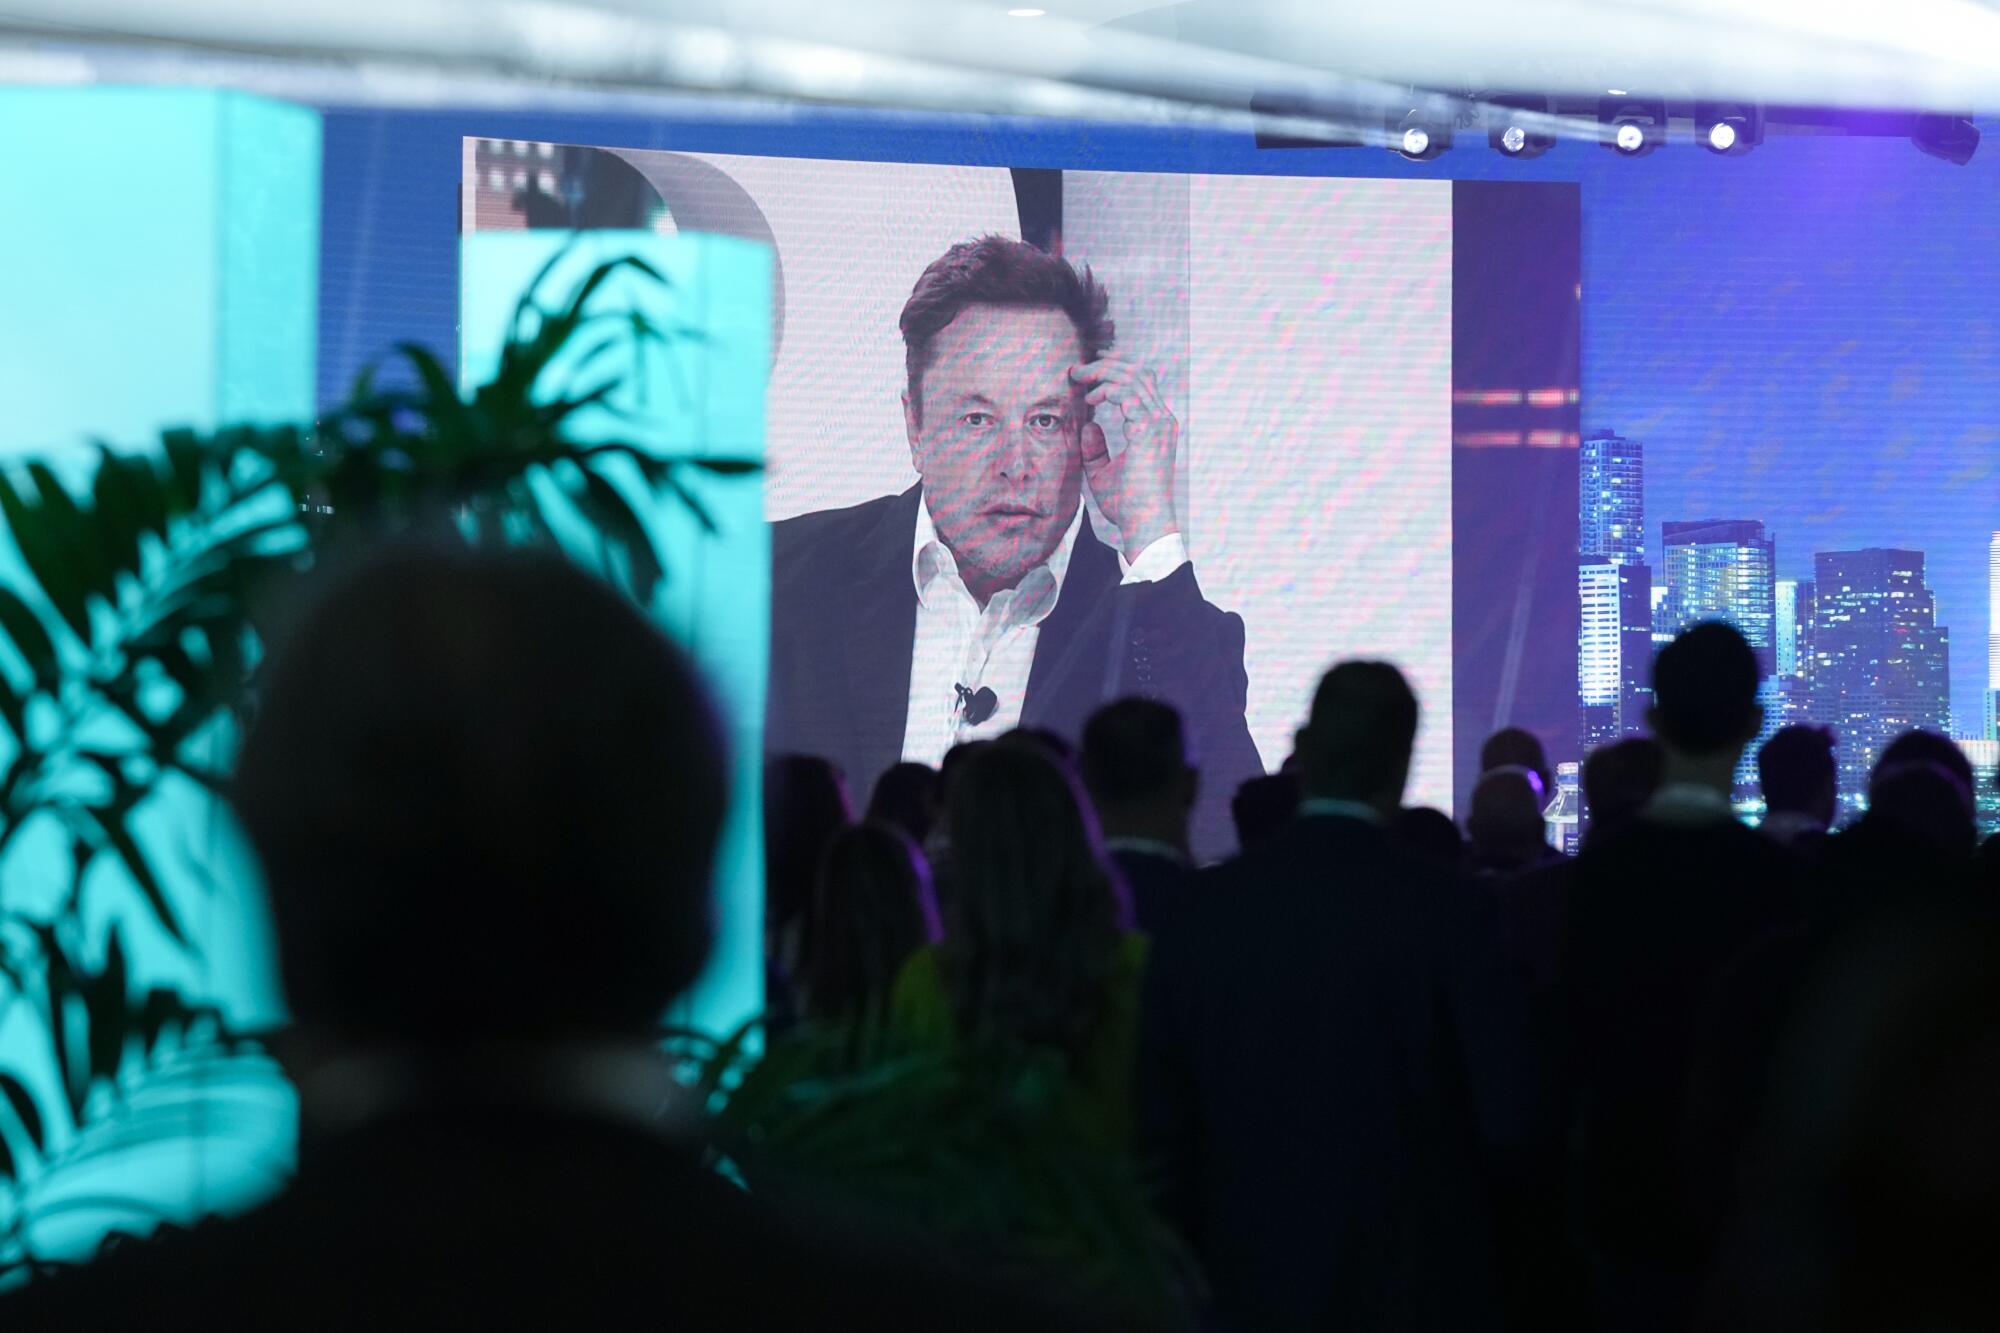 Elon Musk wird auf einem Bildschirm übertragen.